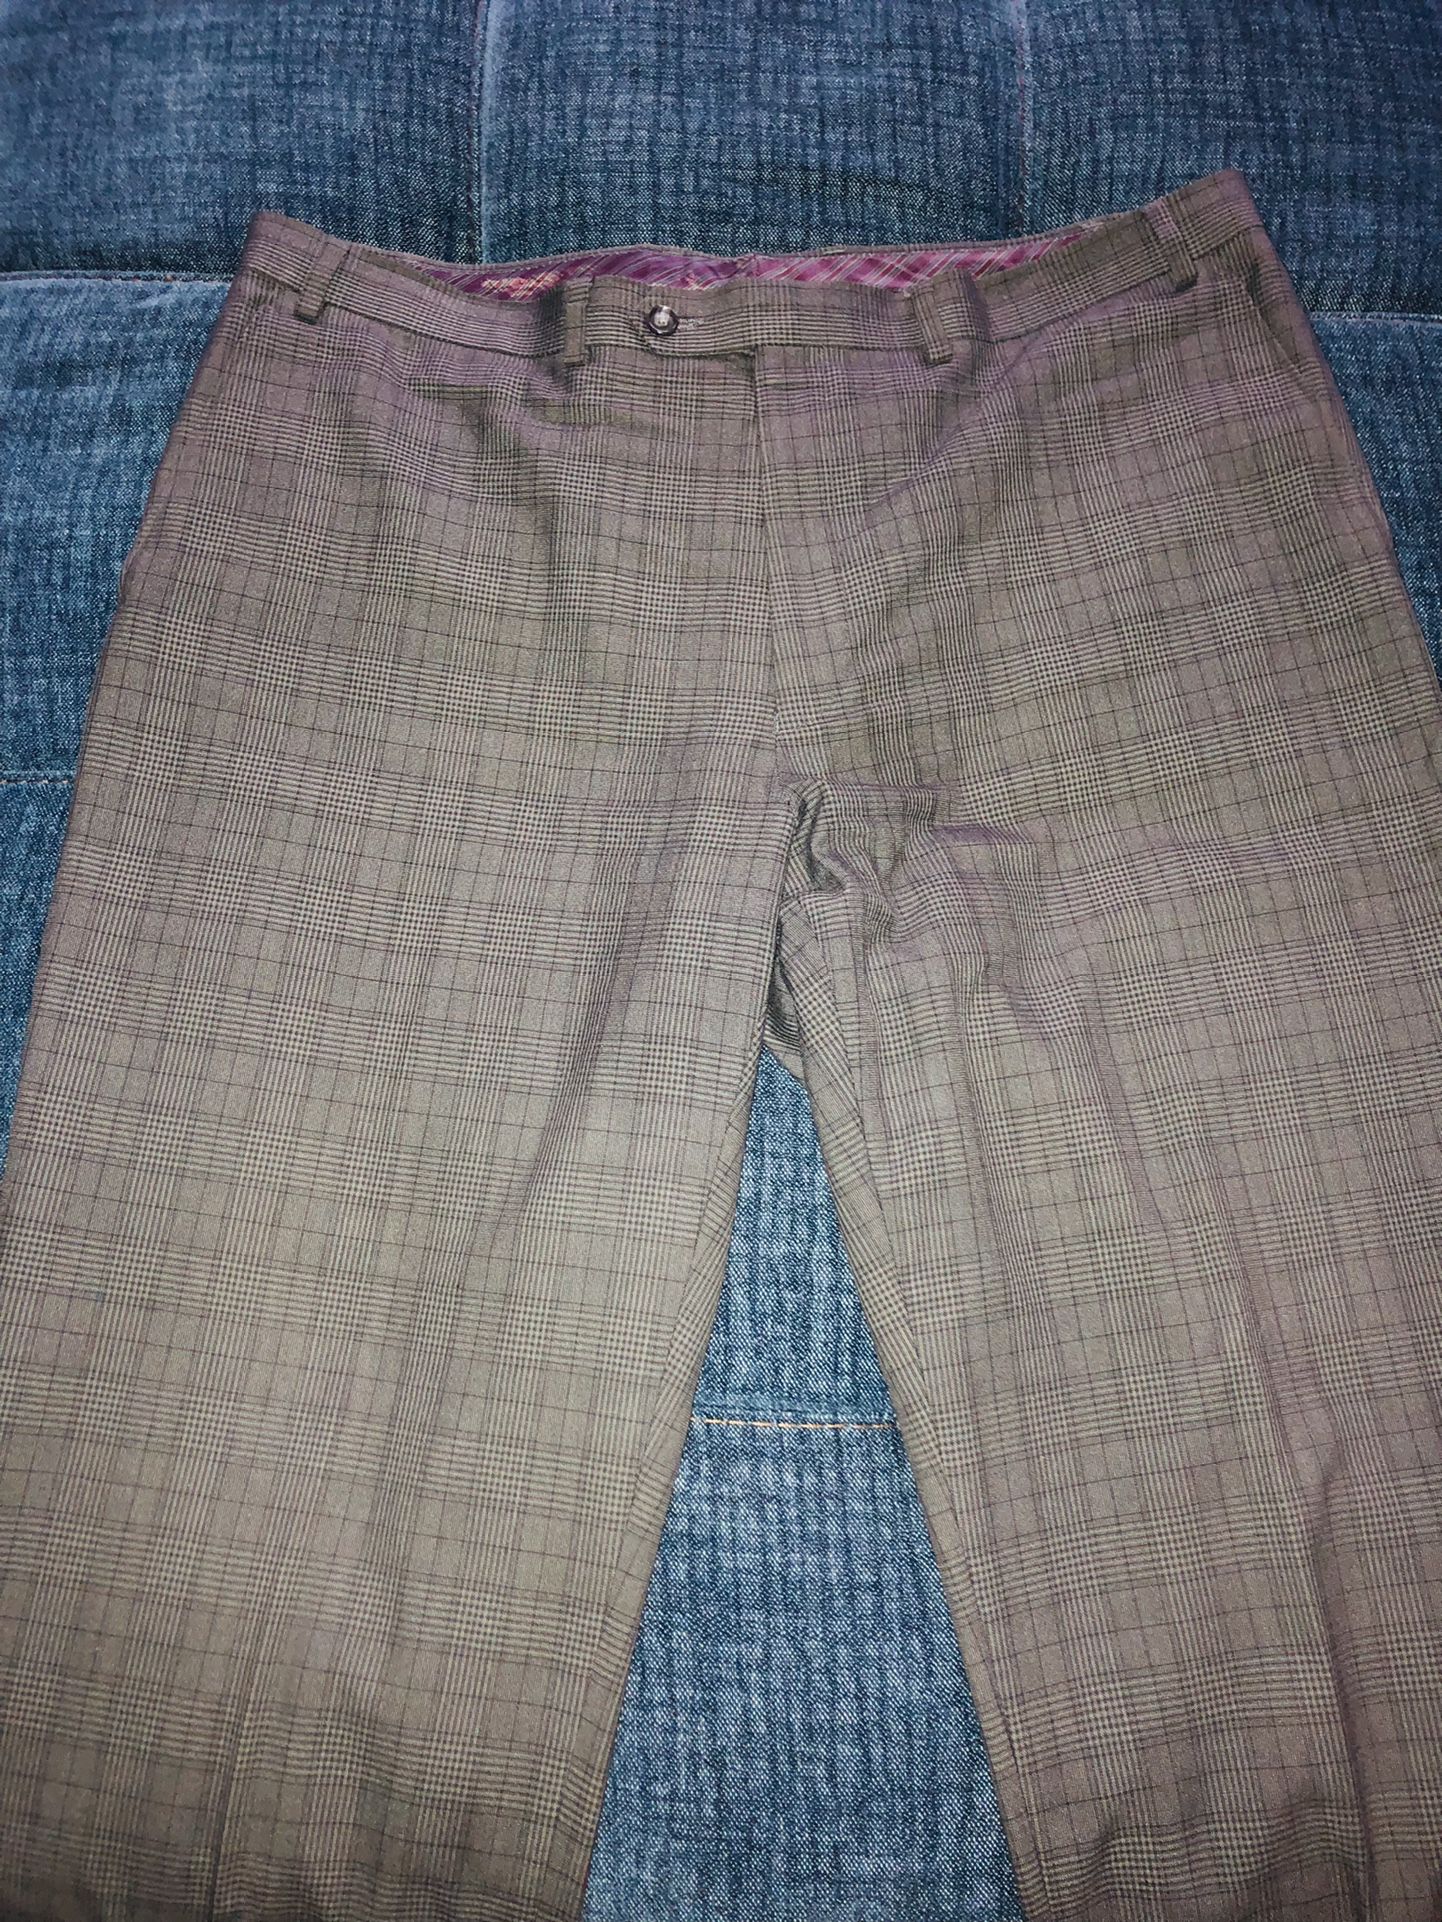 $295 Sean John 46R Men's Gray Plaid Fit 2 Button Suit W/ Pants 38 X 32, Suit